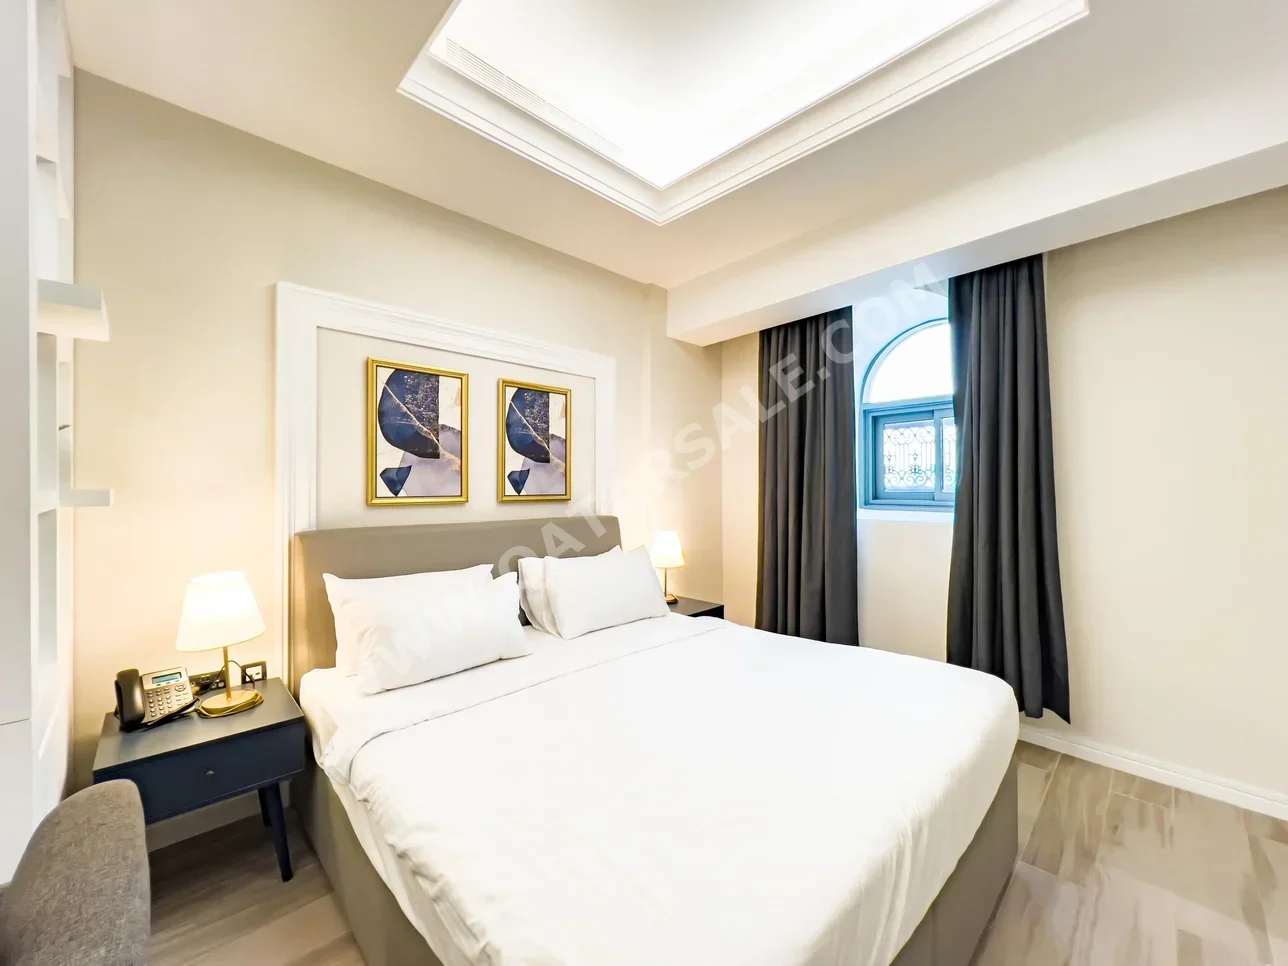 1 غرف نوم  شقة استوديو  للايجار  في الدوحة -  السد  مفروشة بالكامل